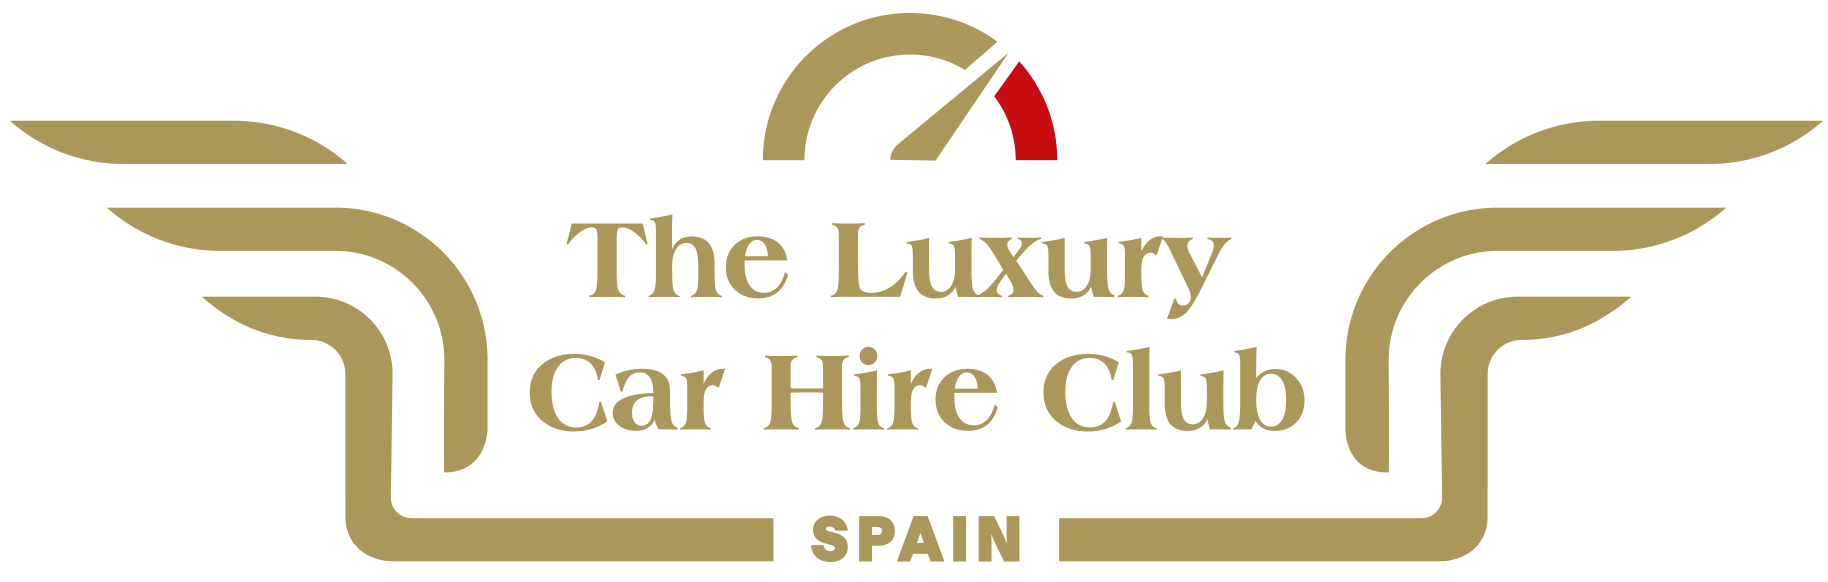 The Luxury Car Hire Club Marbella